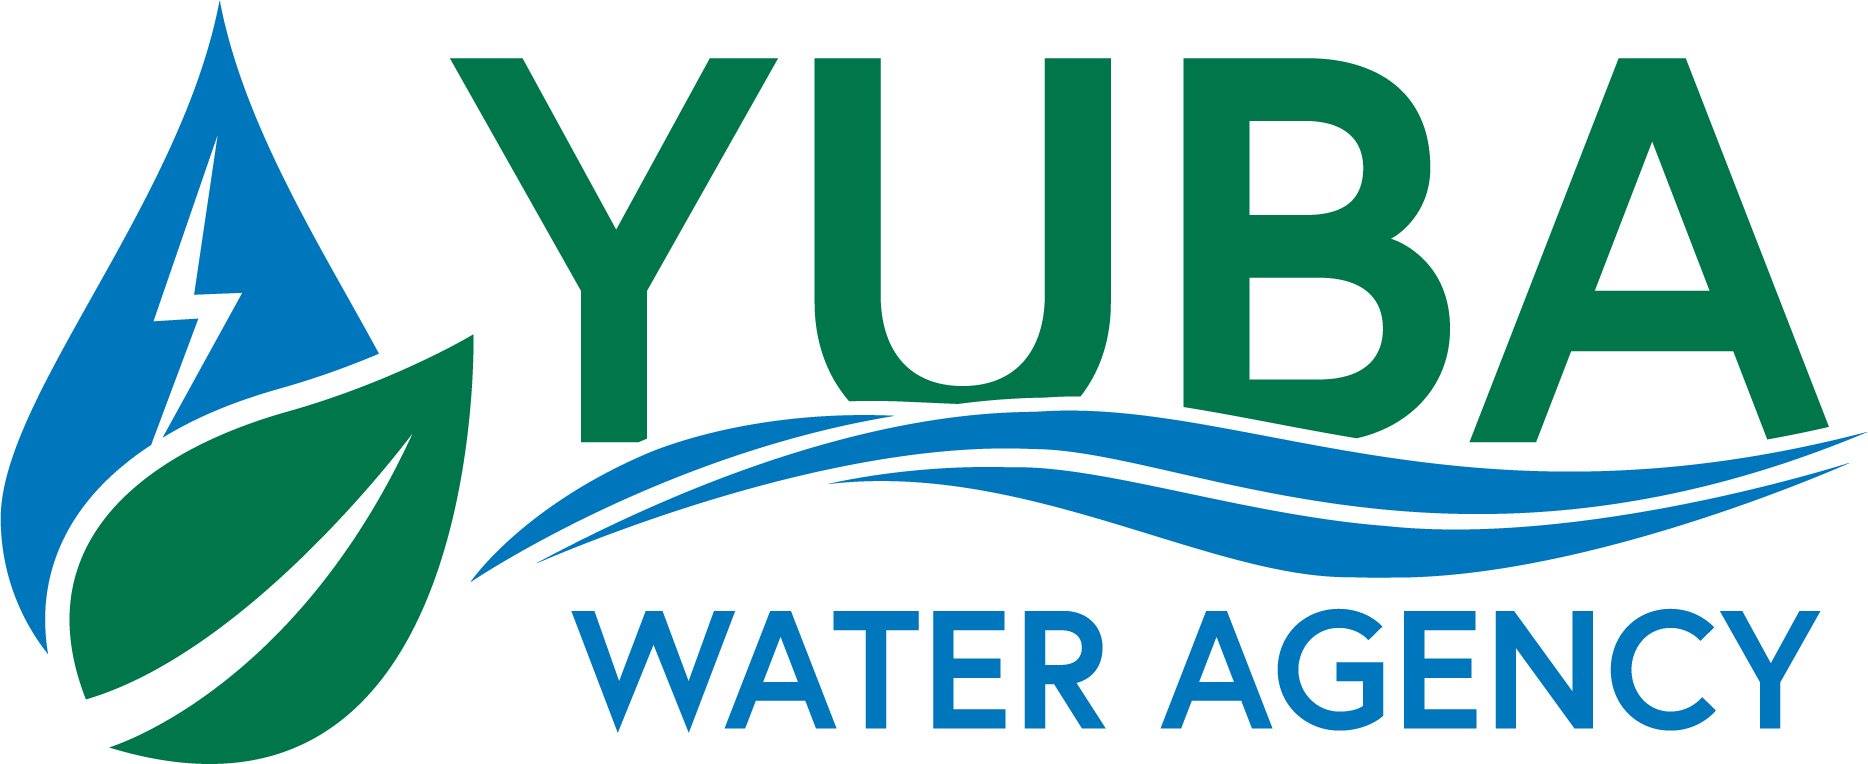 yuba water agency